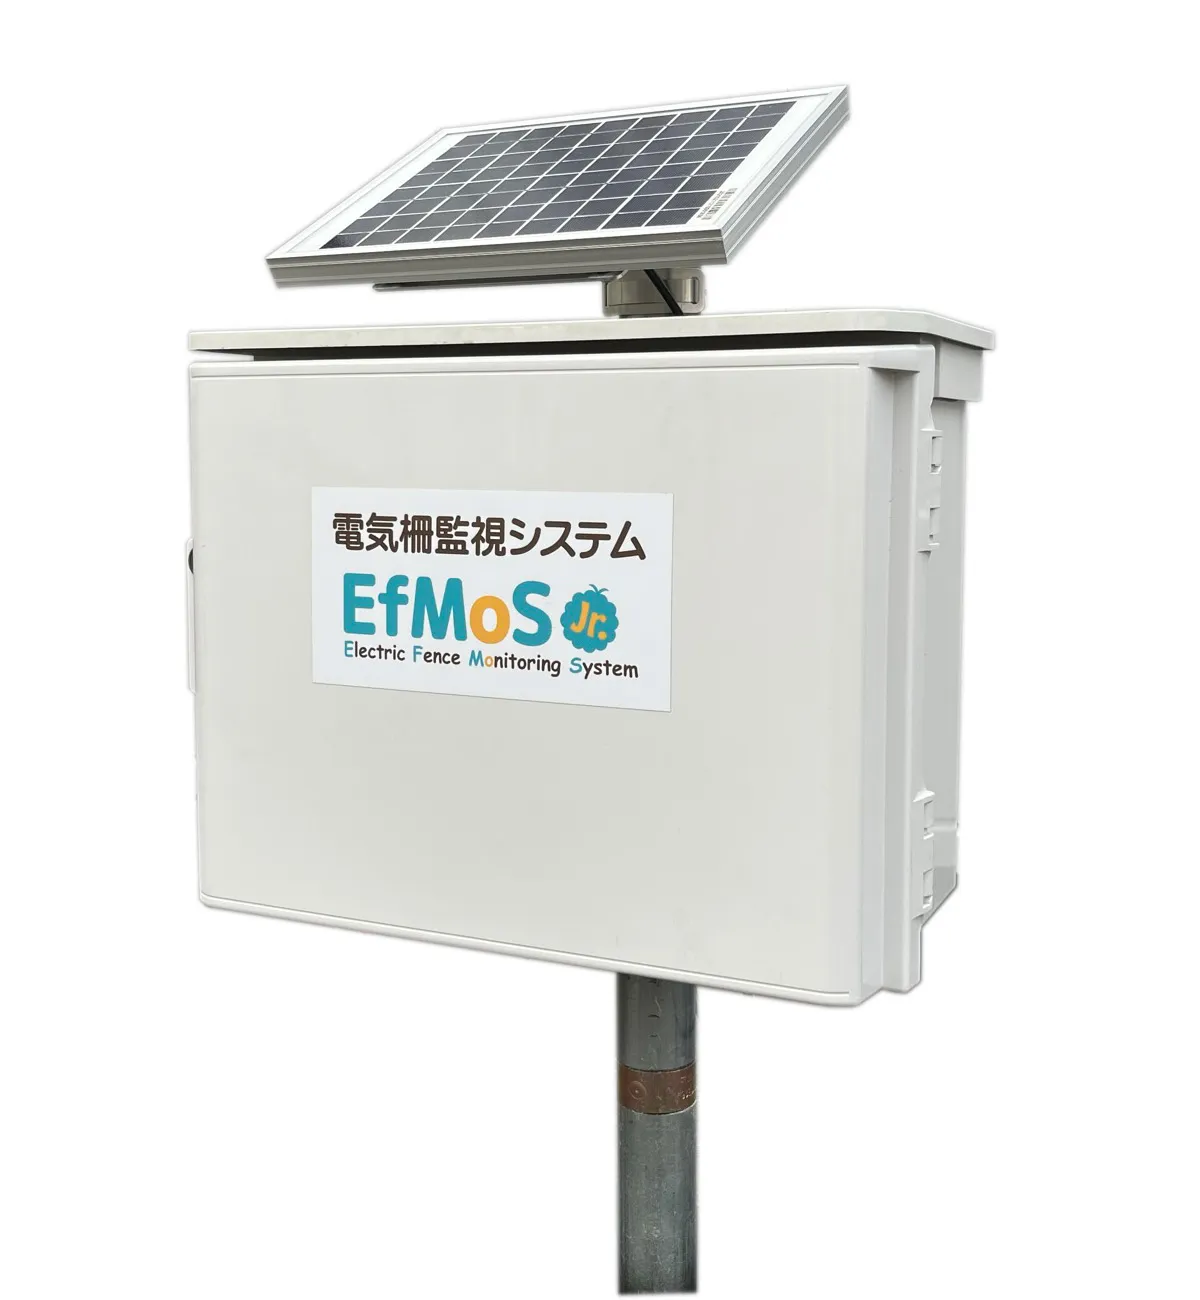 電気柵監視システム「エフモスジュニアVer2.0」5月より販売開始。